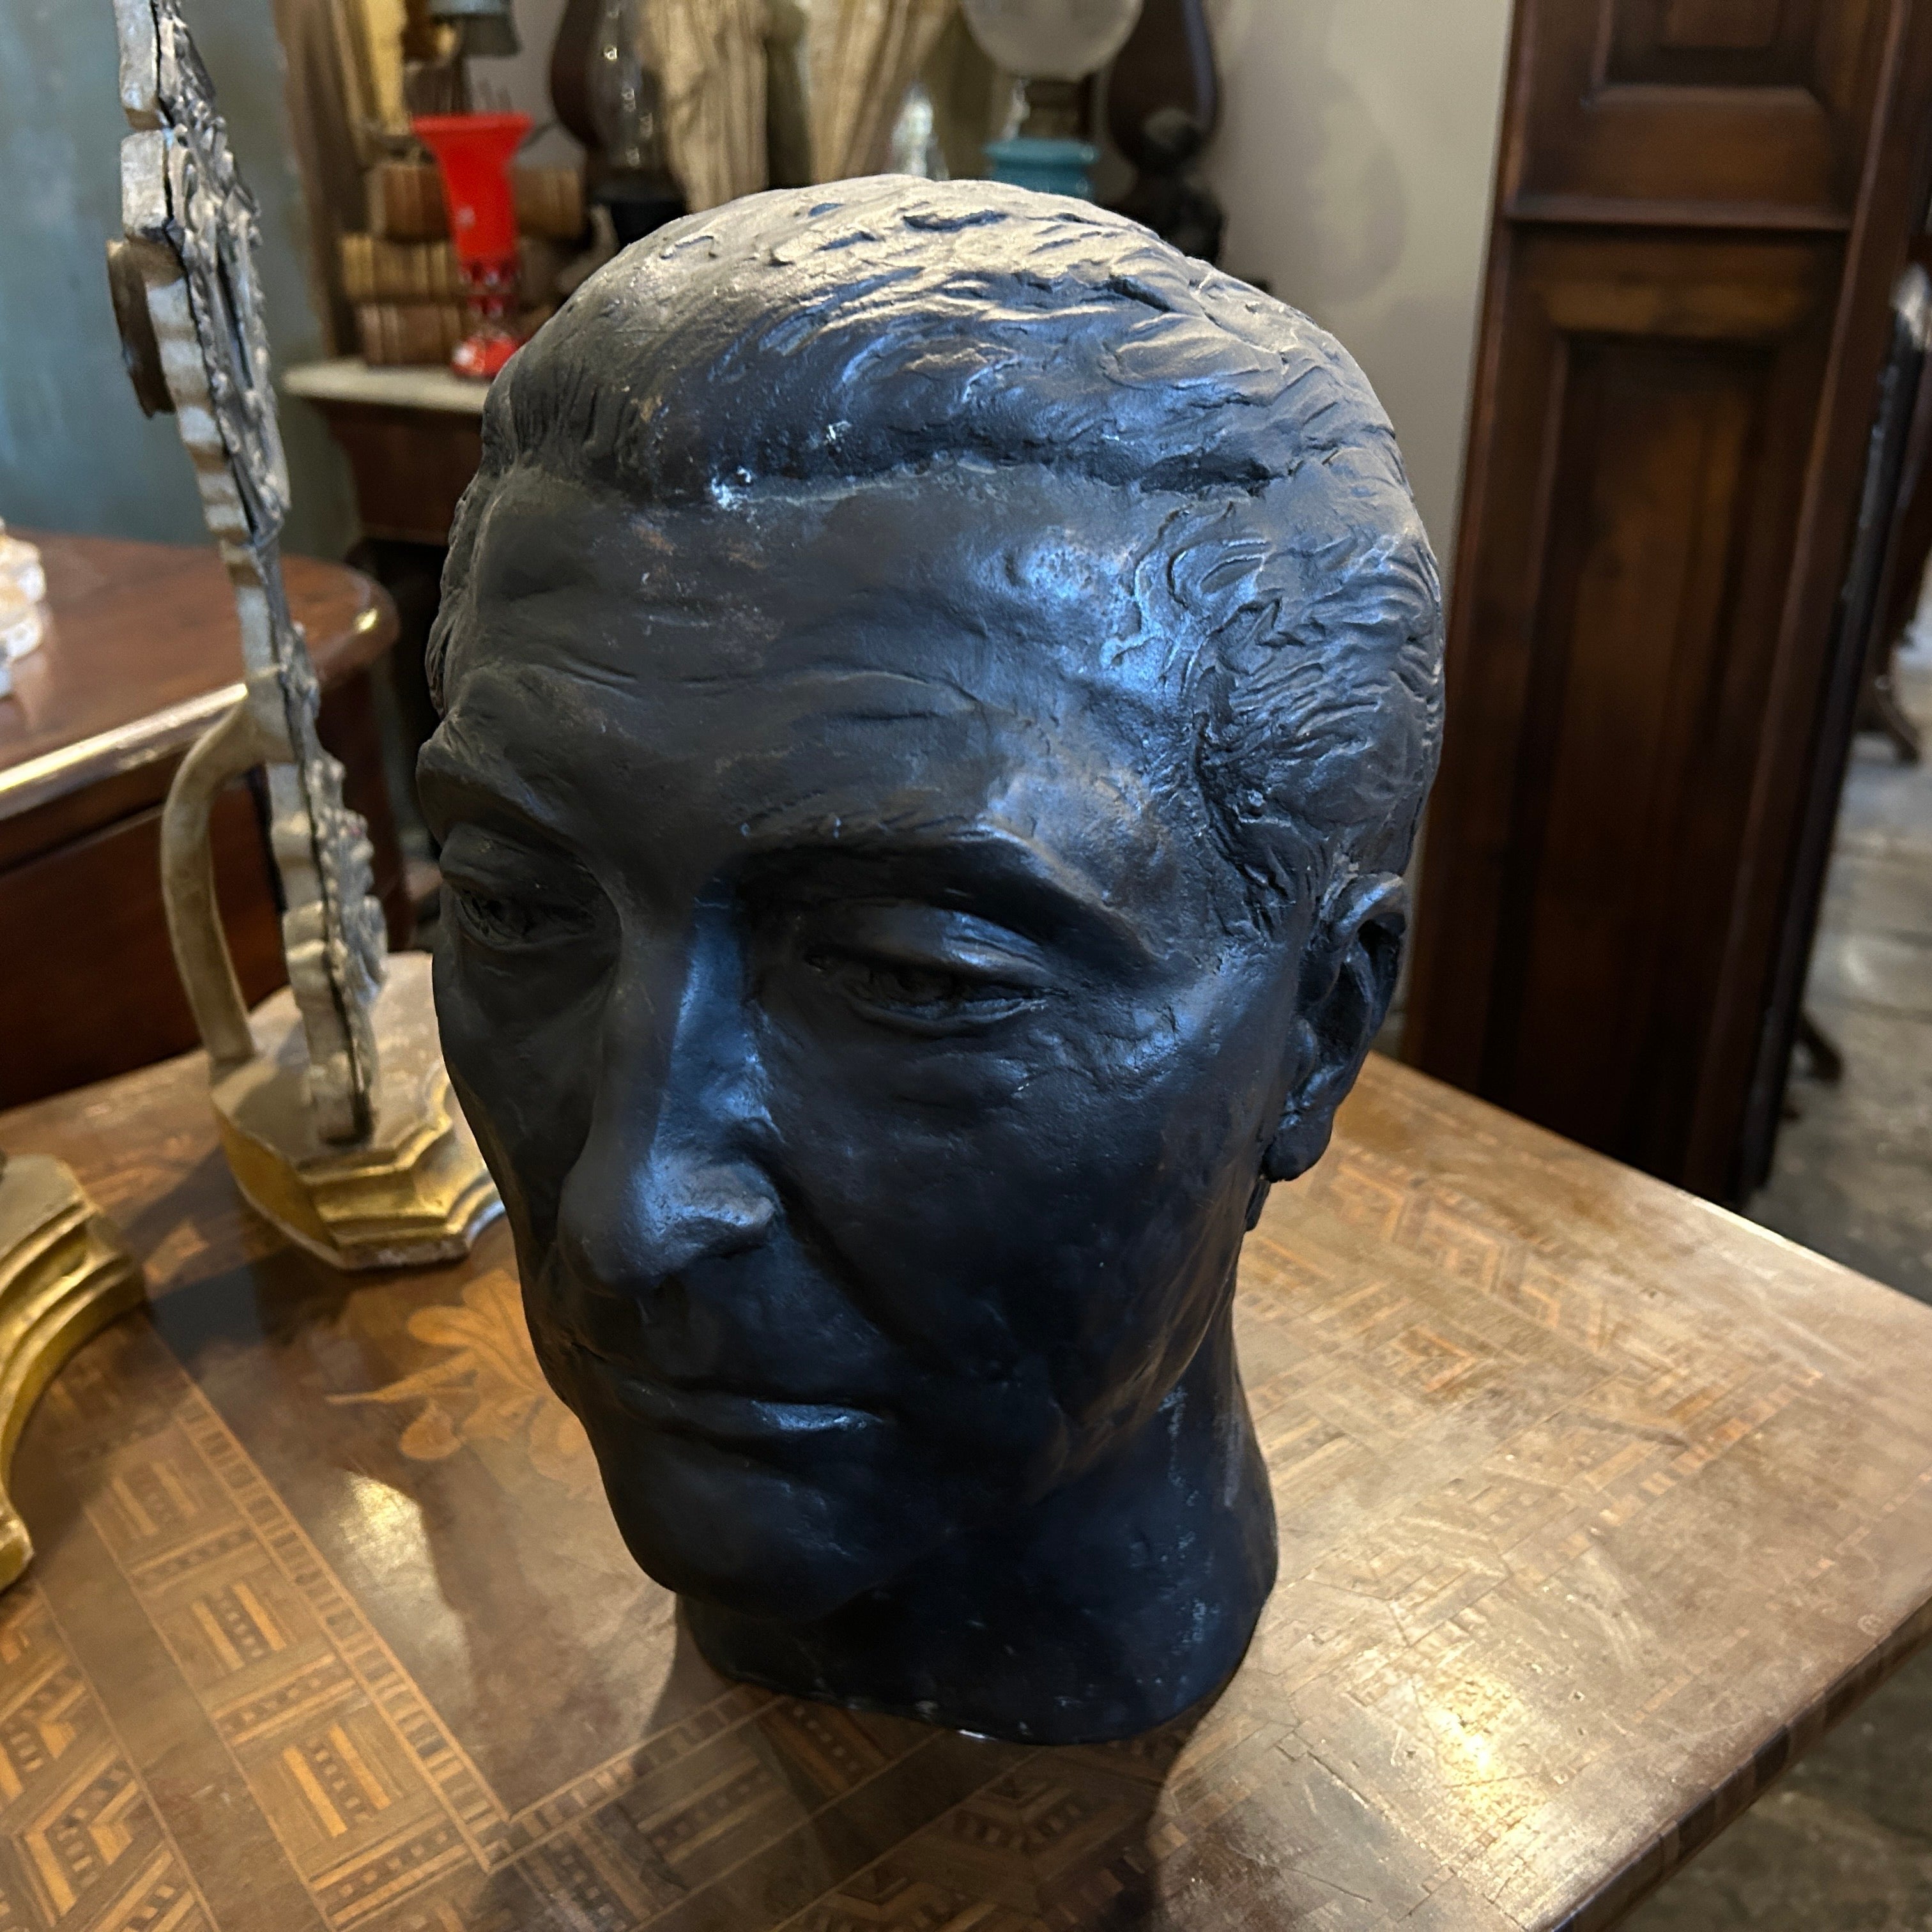 Une tête de bronze sicilienne des années 1920 est une sculpture créée au début du XXe siècle sur l'île de Sicile. Elle a été coulée en bronze, un matériau durable, et façonnée en forme de tête, avec un aspect réaliste.
Les sculptures en bronze